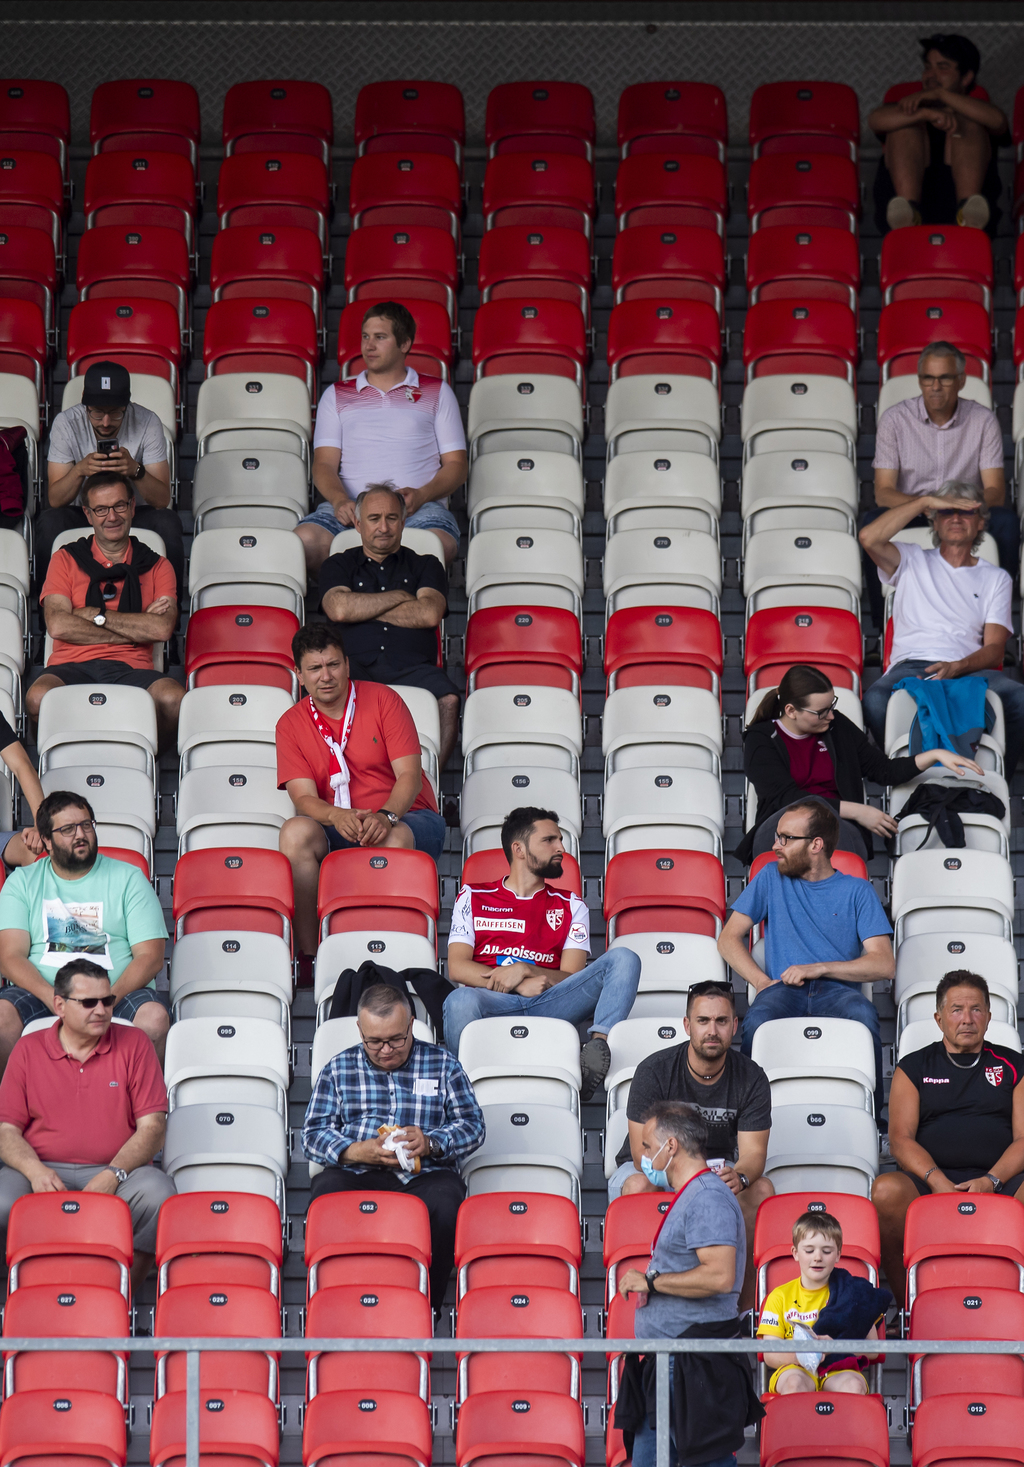 Les supporters valaisans lors de la rencontre de football du Championnat Suisse de Super League entre le FC Sion et le Servette FC le mercredi 24 juin 2020 au stade de Tourbillon a Sion. (KEYSTONE/Jean-Christophe Bott)